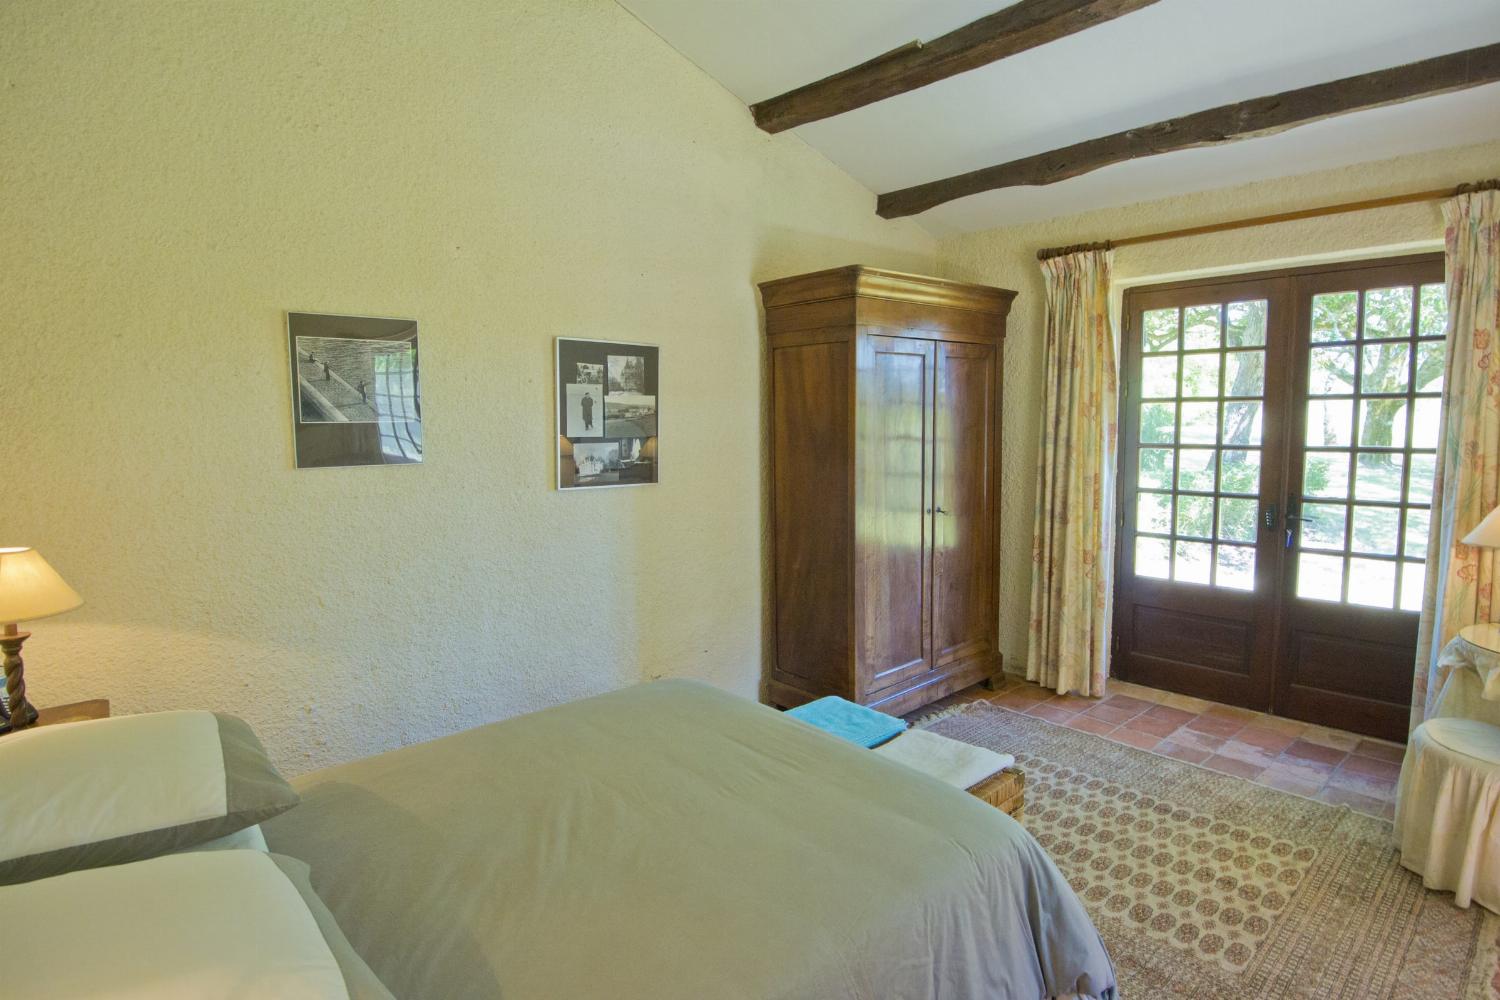 Bedroom | Rental accommodation in Dordogne